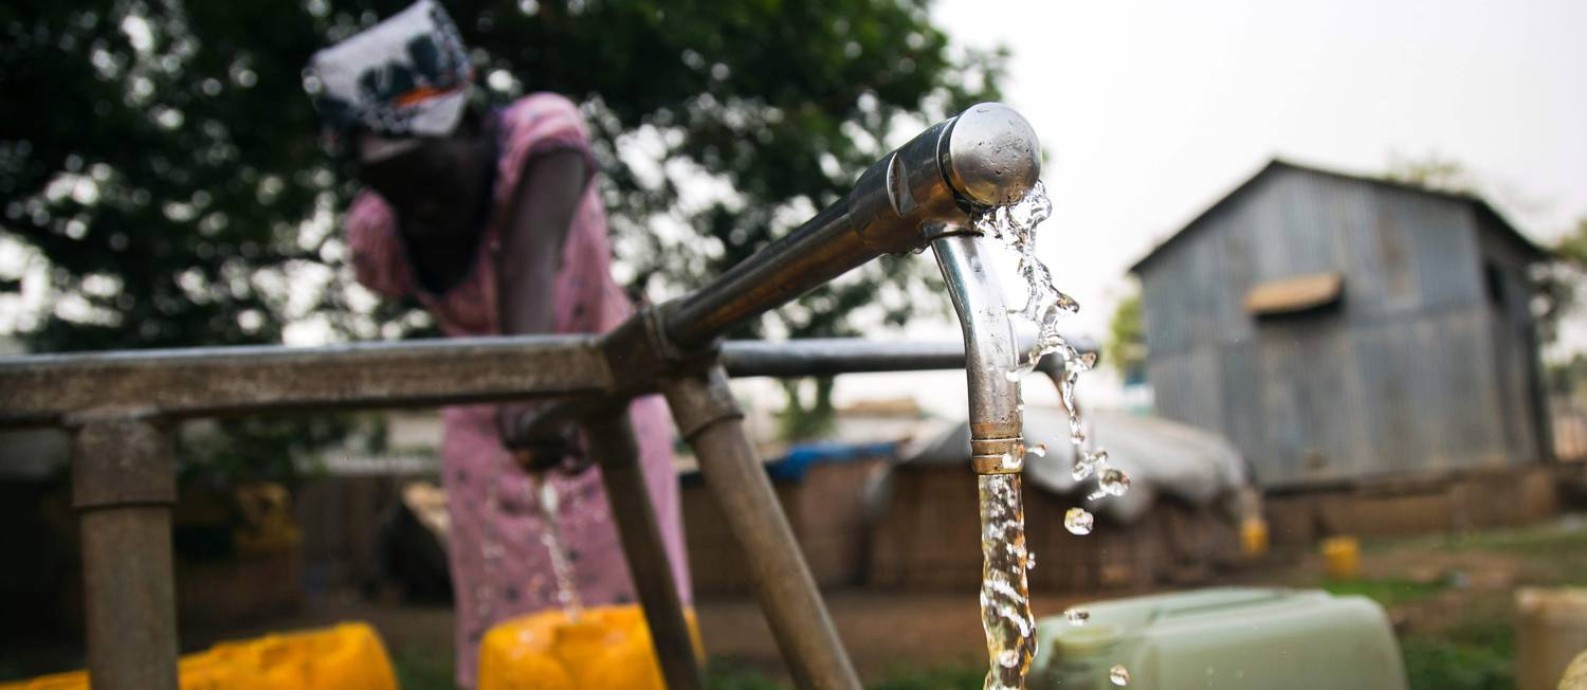 
ONU alerta sobre a necessidade de novas fontes de água para suprir a demanda crescente
Foto:
ALBERT GONZALEZ FARRAN
/
AFP
